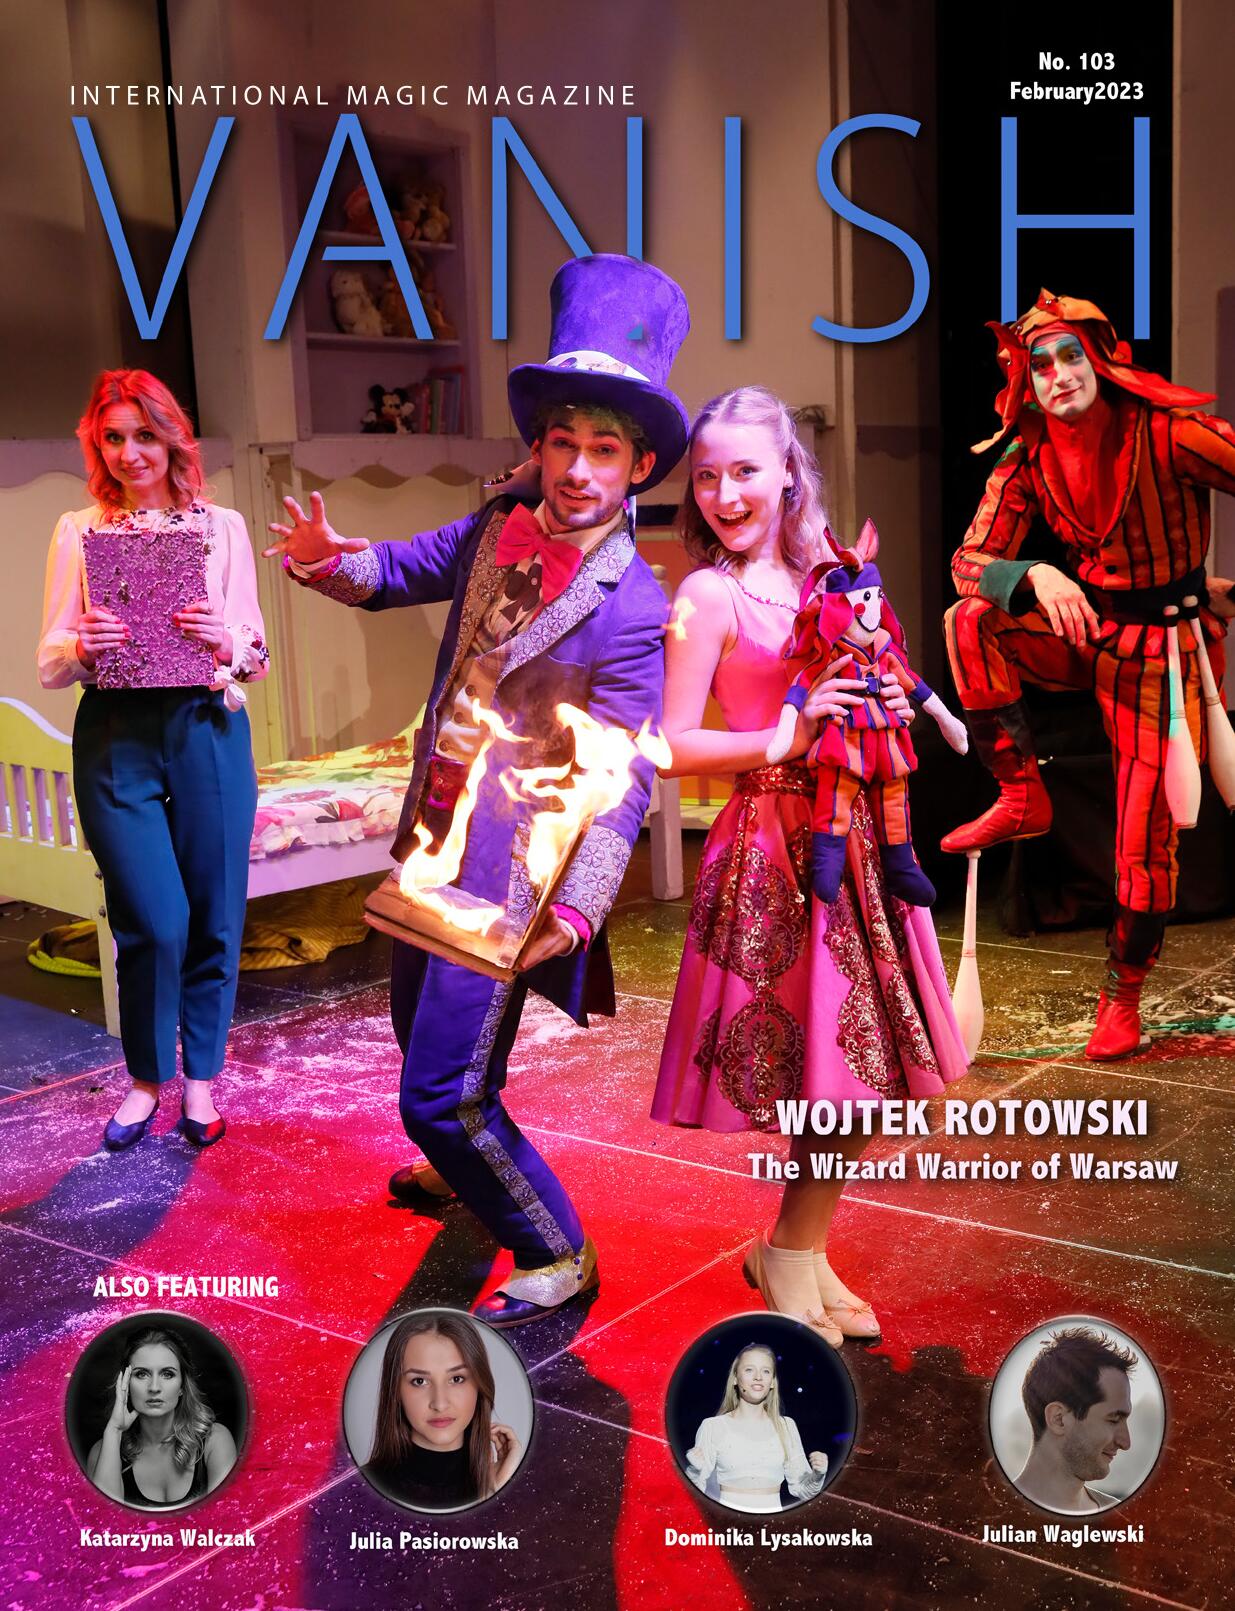 Vanish Magazine #103 February 2023